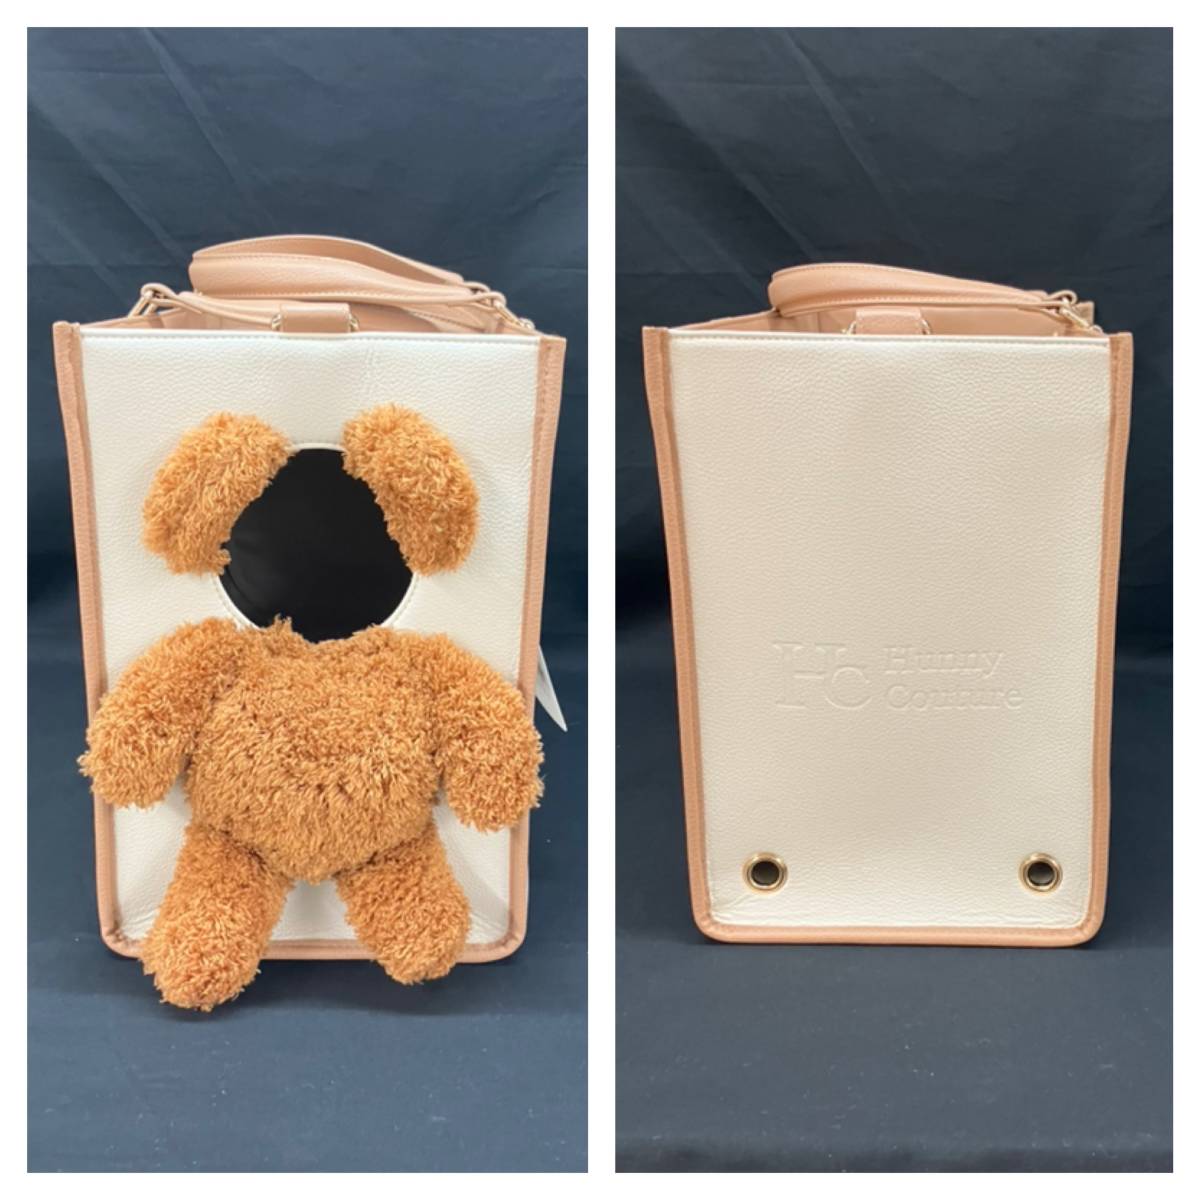 [ не использовался ]Hunny couture мед kchu-ru домашнее животное специальный дорожная сумка L размер Brown Bear бежевый прогулка .... путешествие дыра окно ремень 